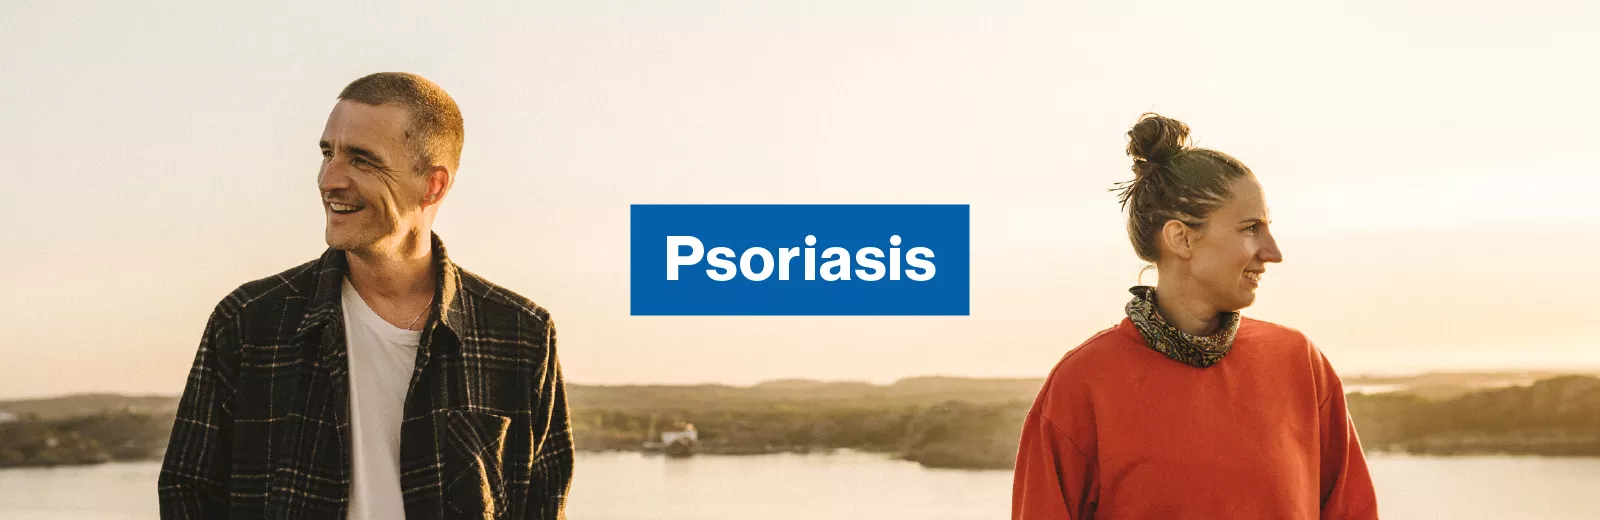 Vad är psoriasis?